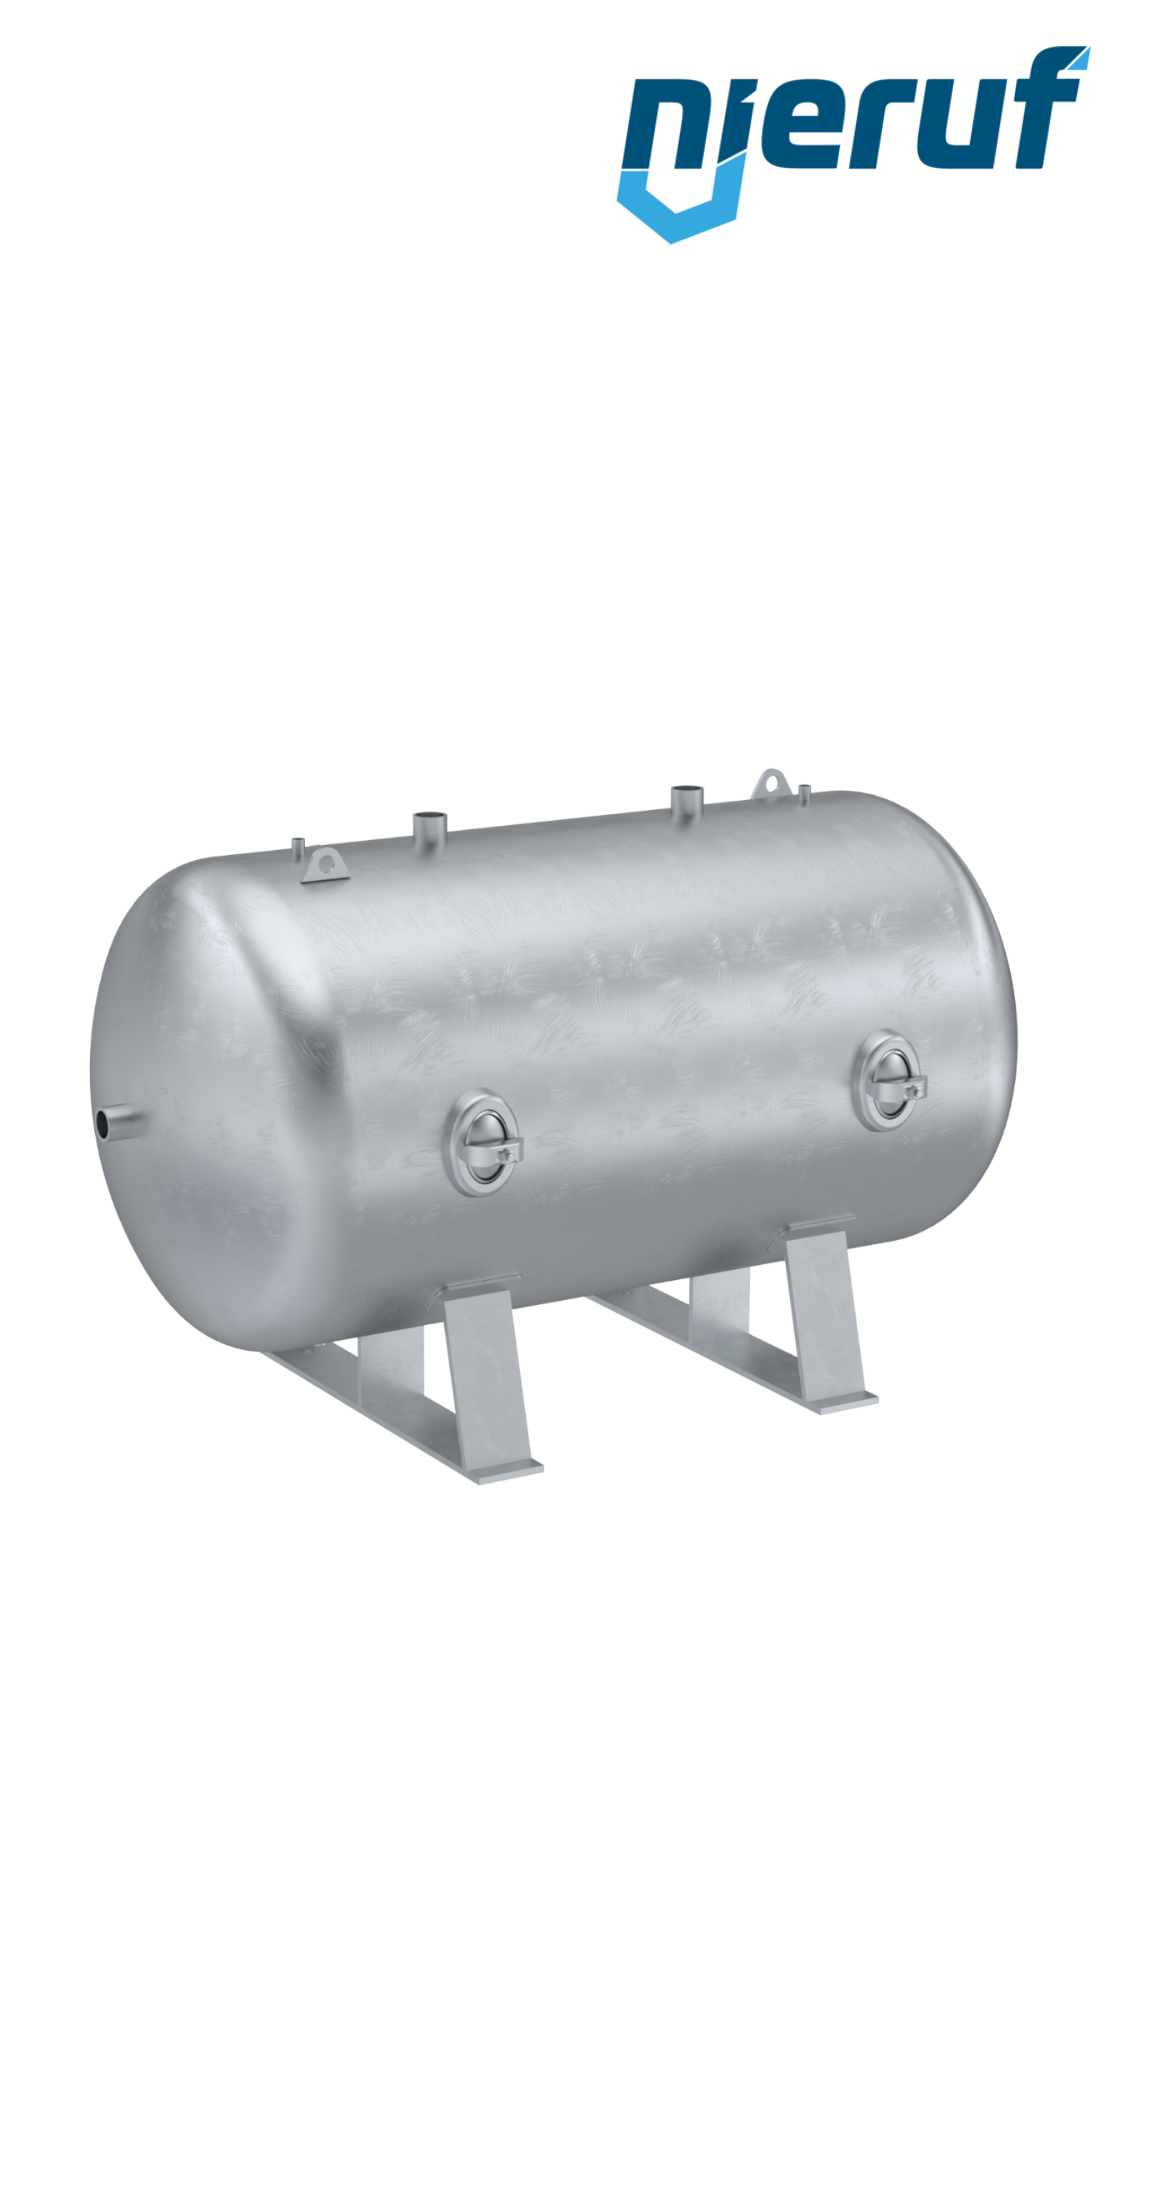 Serbatoi per alta pressione orizzontale BE02 1500 litri, 0-41 bar, acciaio zincato